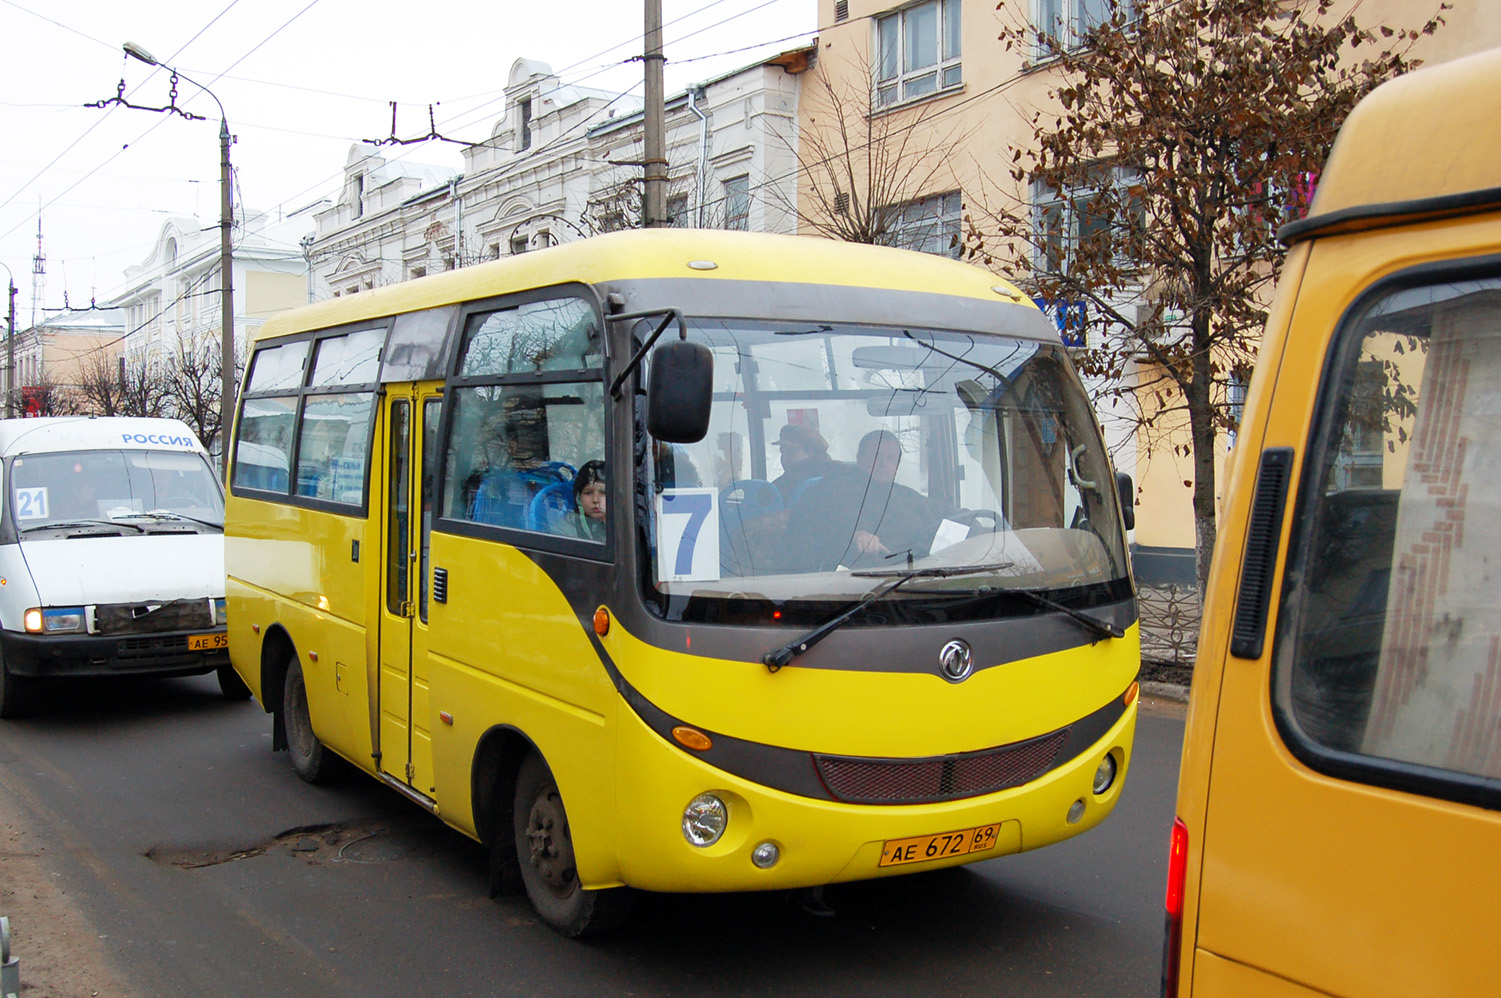 Тверская область, Dongfeng DFA6600 № АЕ 672 69; Тверская область — Маршрутные такси Твери (2000 — 2009 гг.)